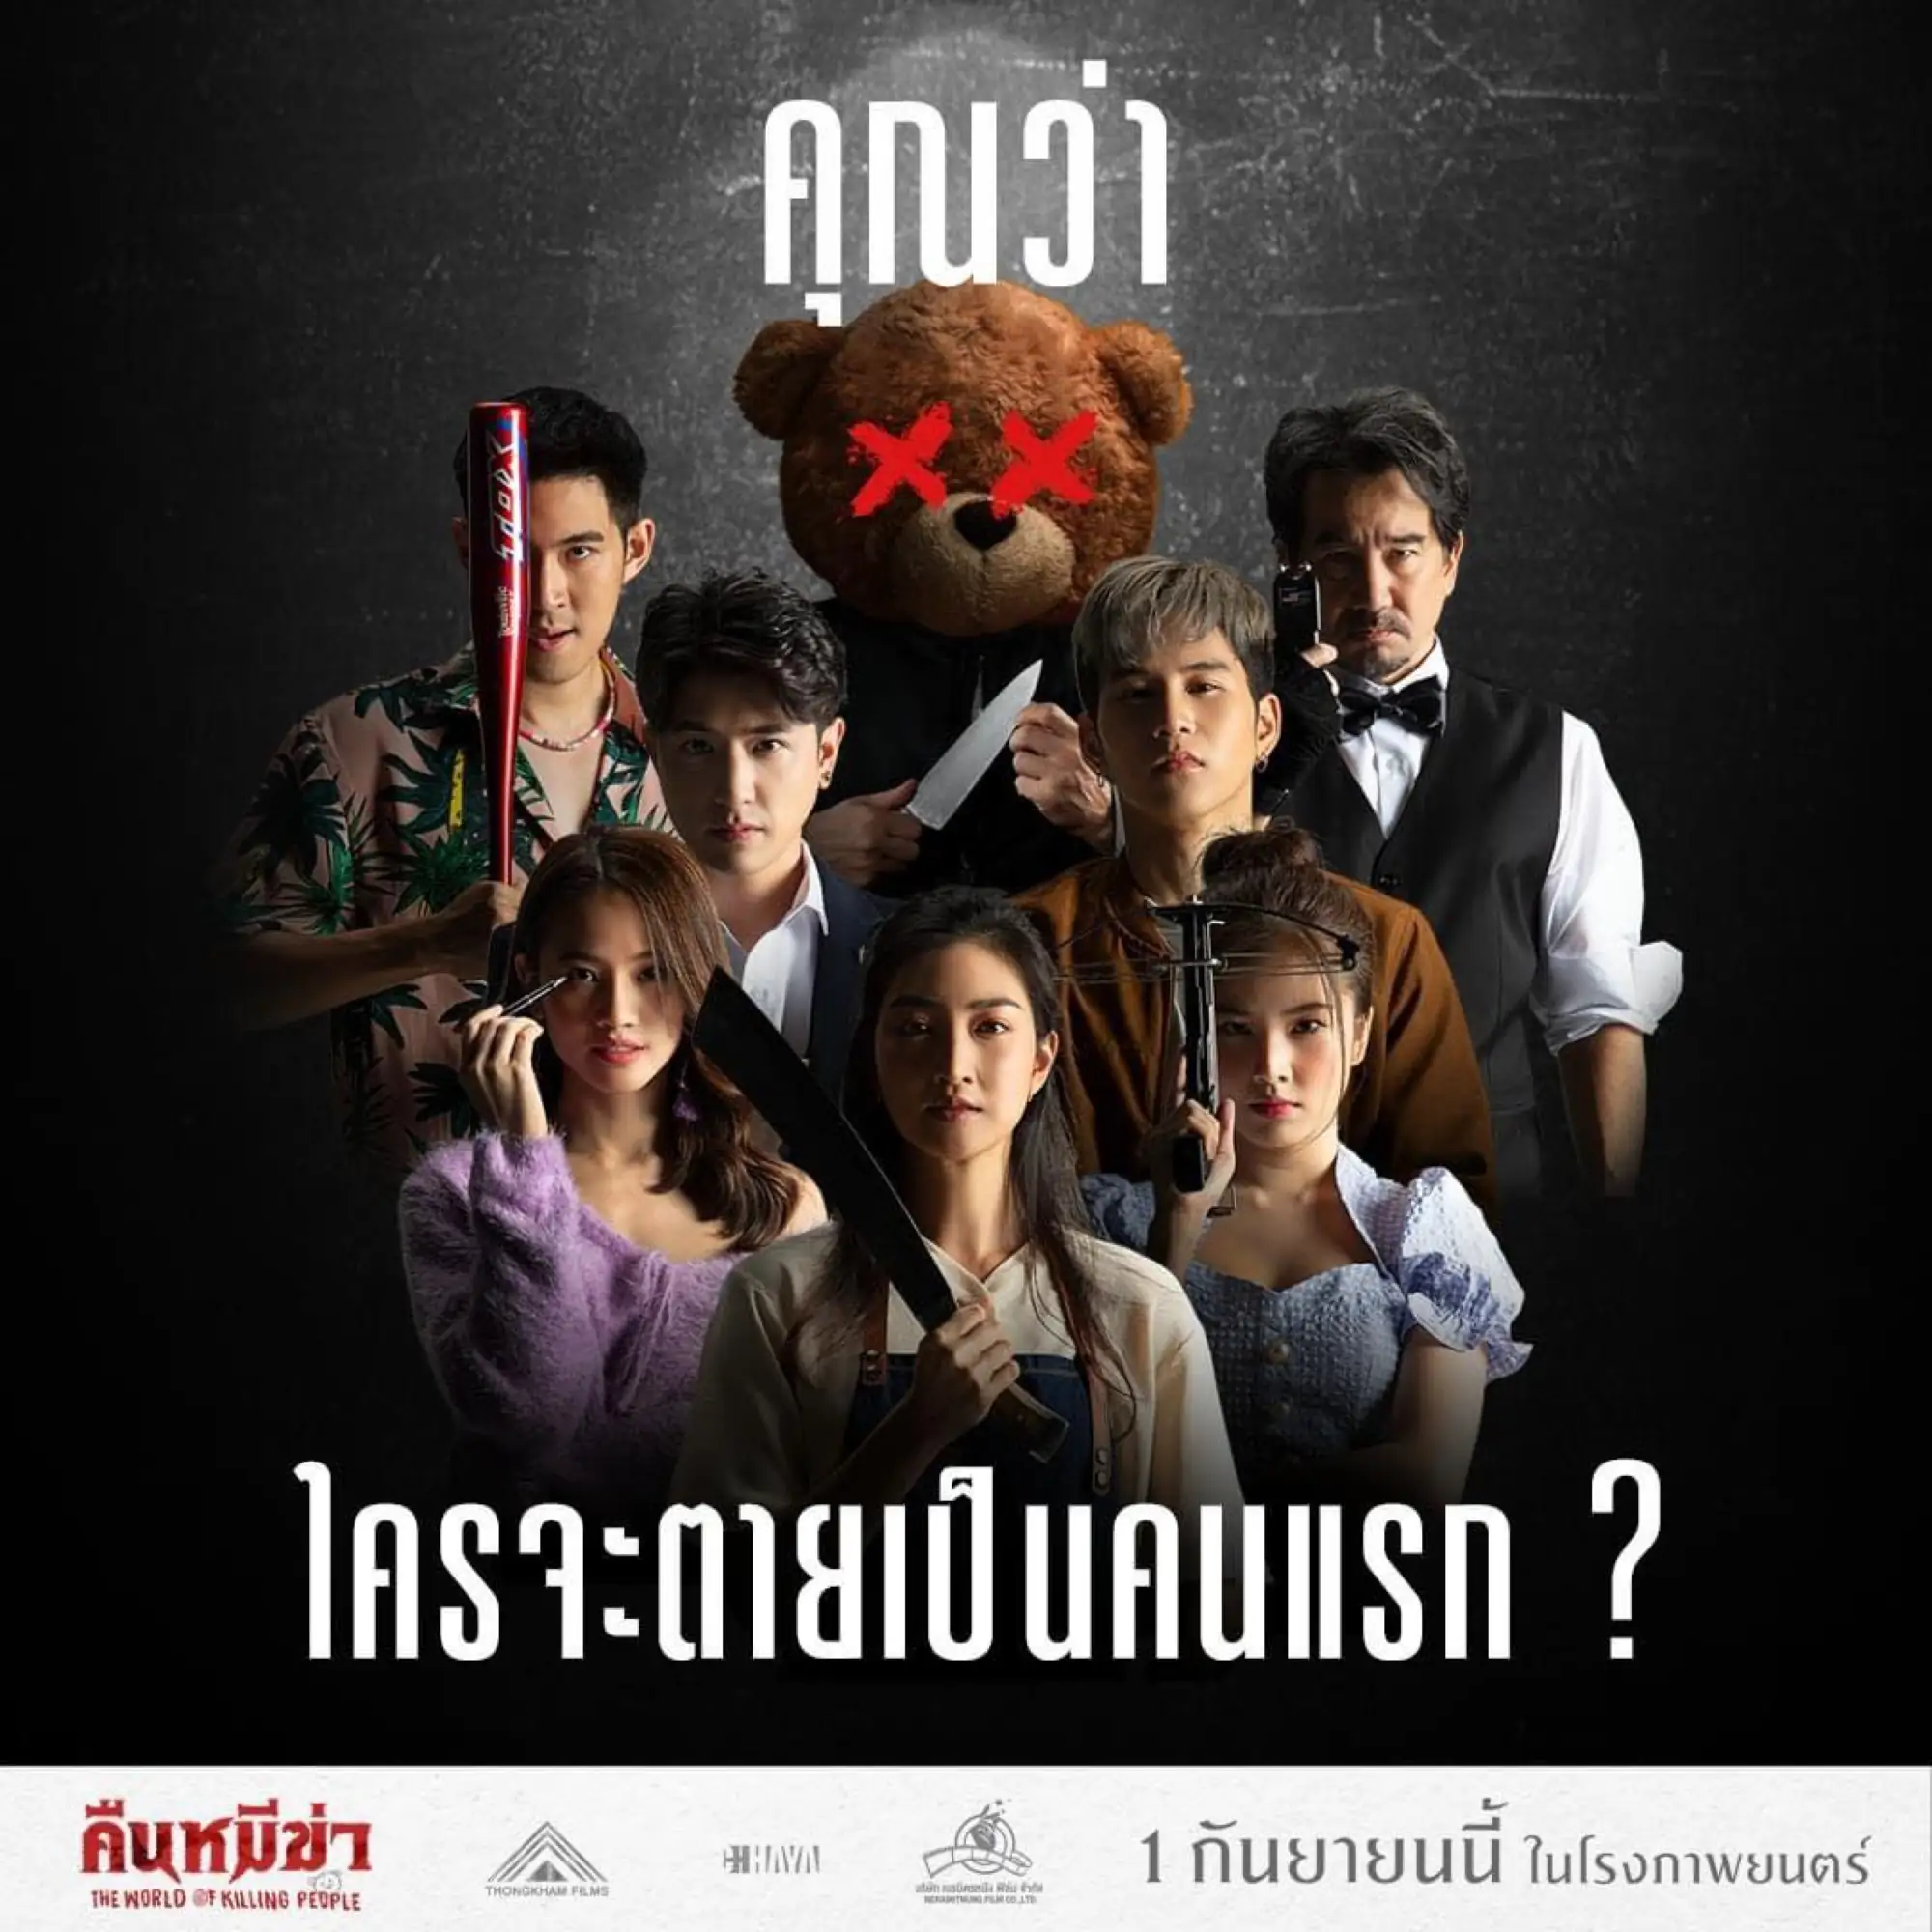 电影《杀人世界》海报（图片来源：Thongkham Films）